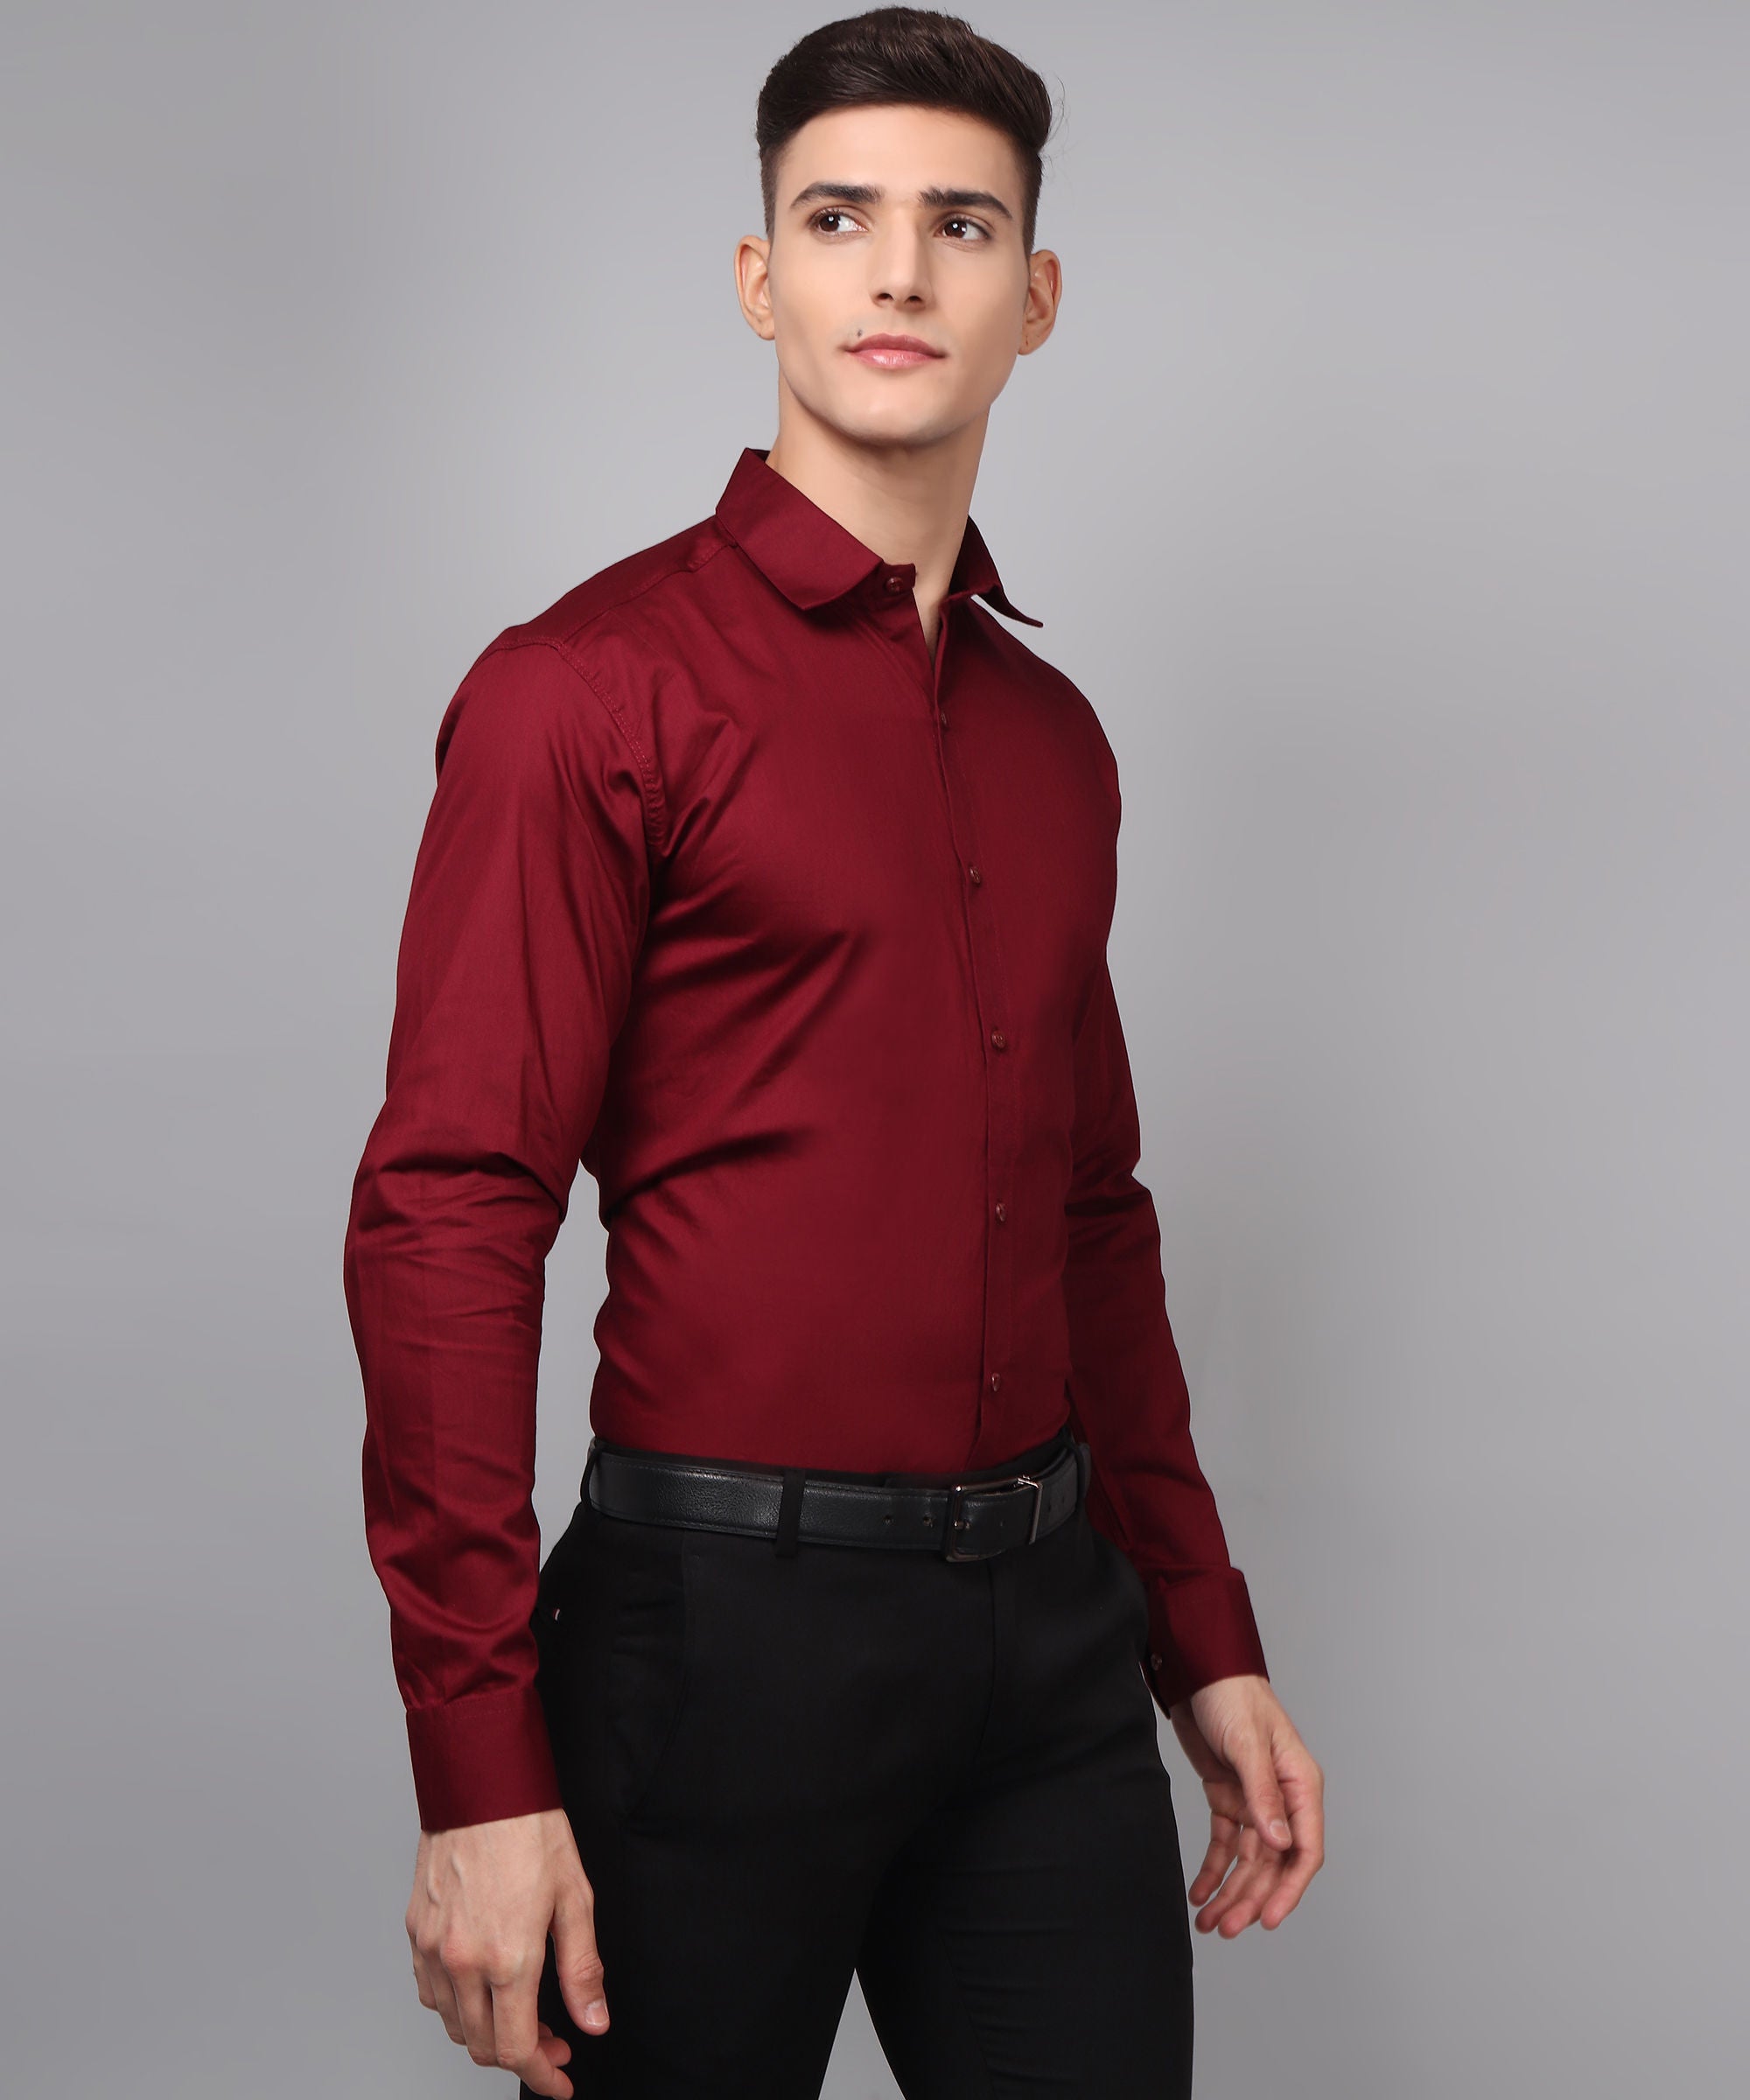 Exclusive TryBuy Premium Maroon Dress Shirt for Men